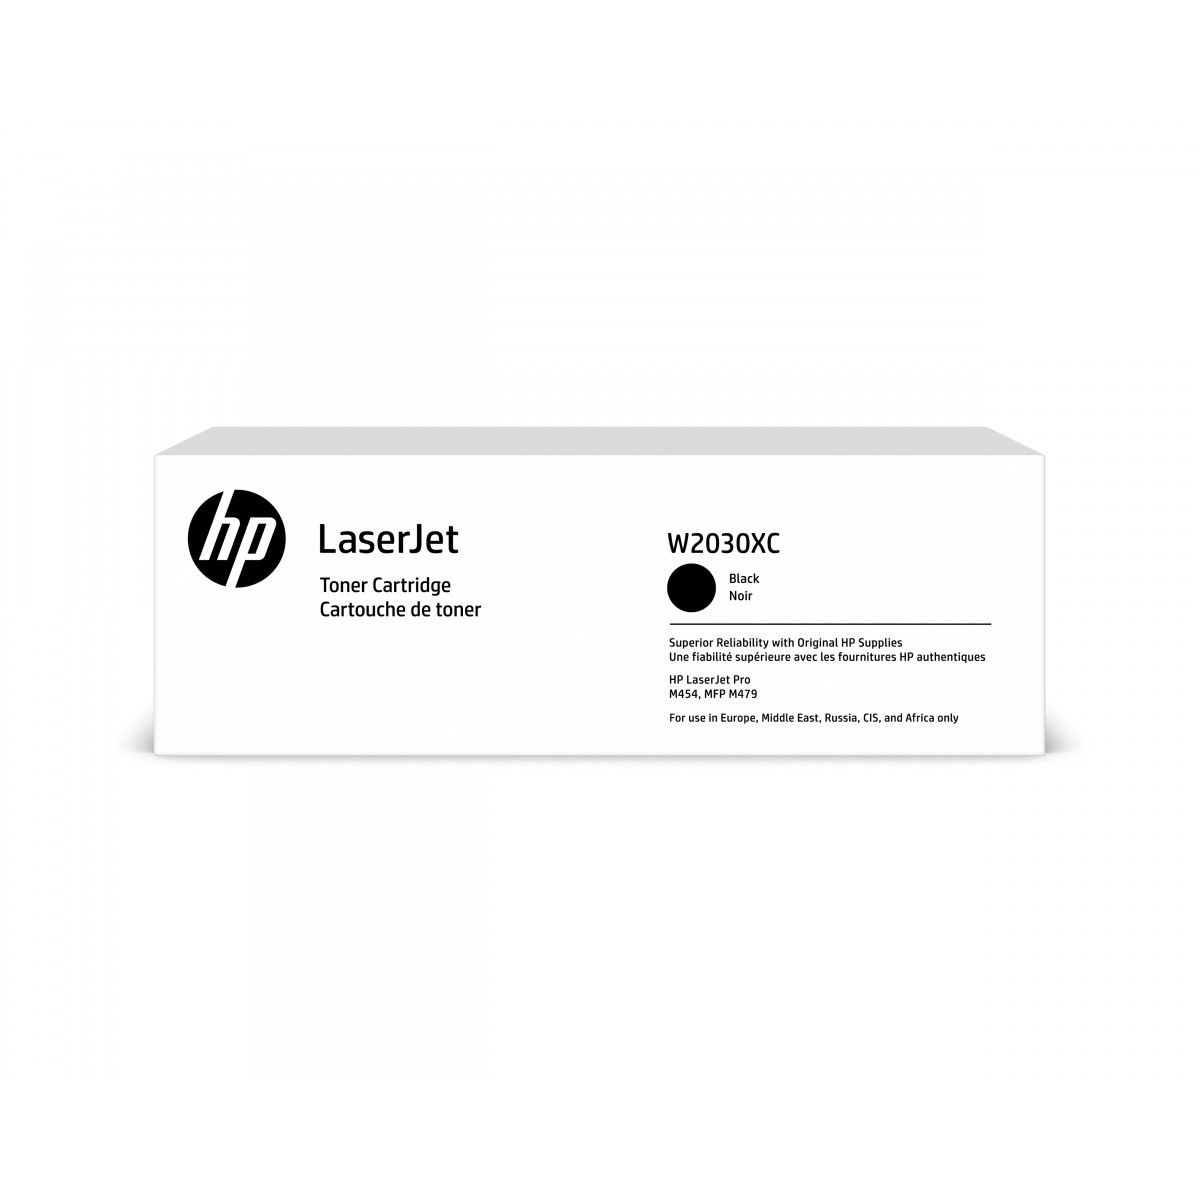 HP 415X Blk Contract LaserJet Toner Crtg - 7500 pages - Black - 1 pc(s)